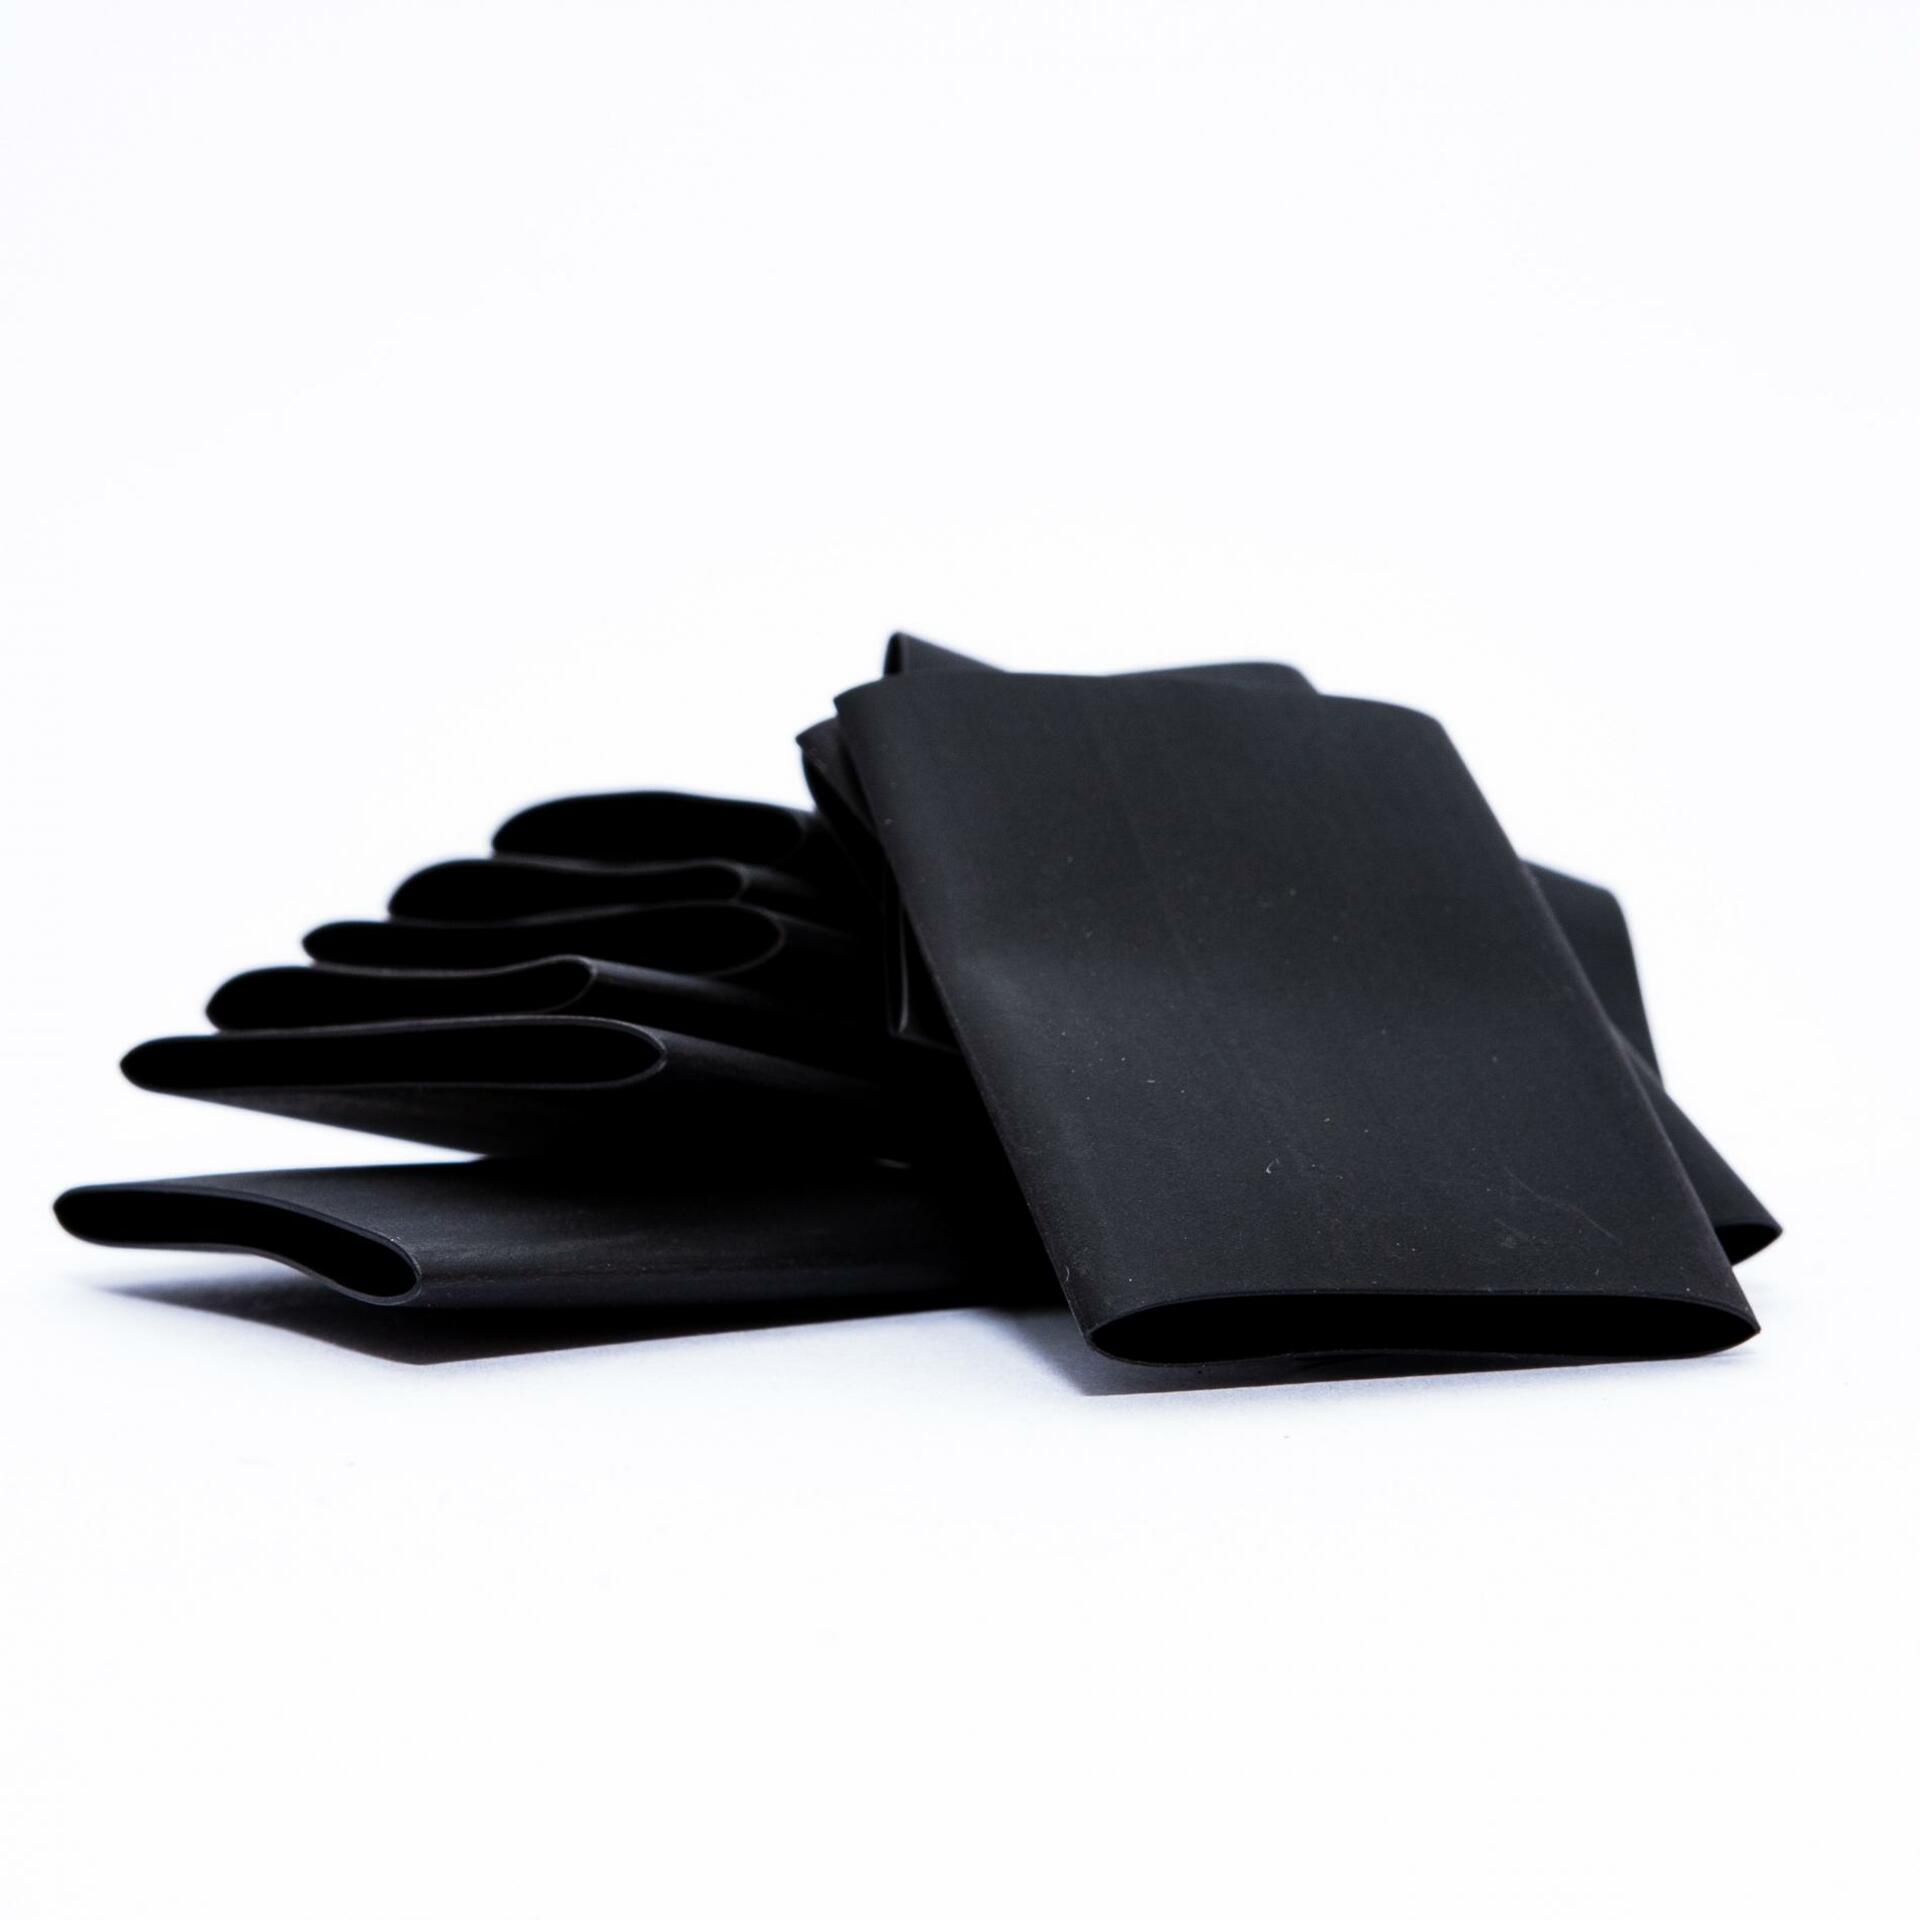 DecoLED Bužírka, černá, 5 x 4 cm, balení po 100 ks